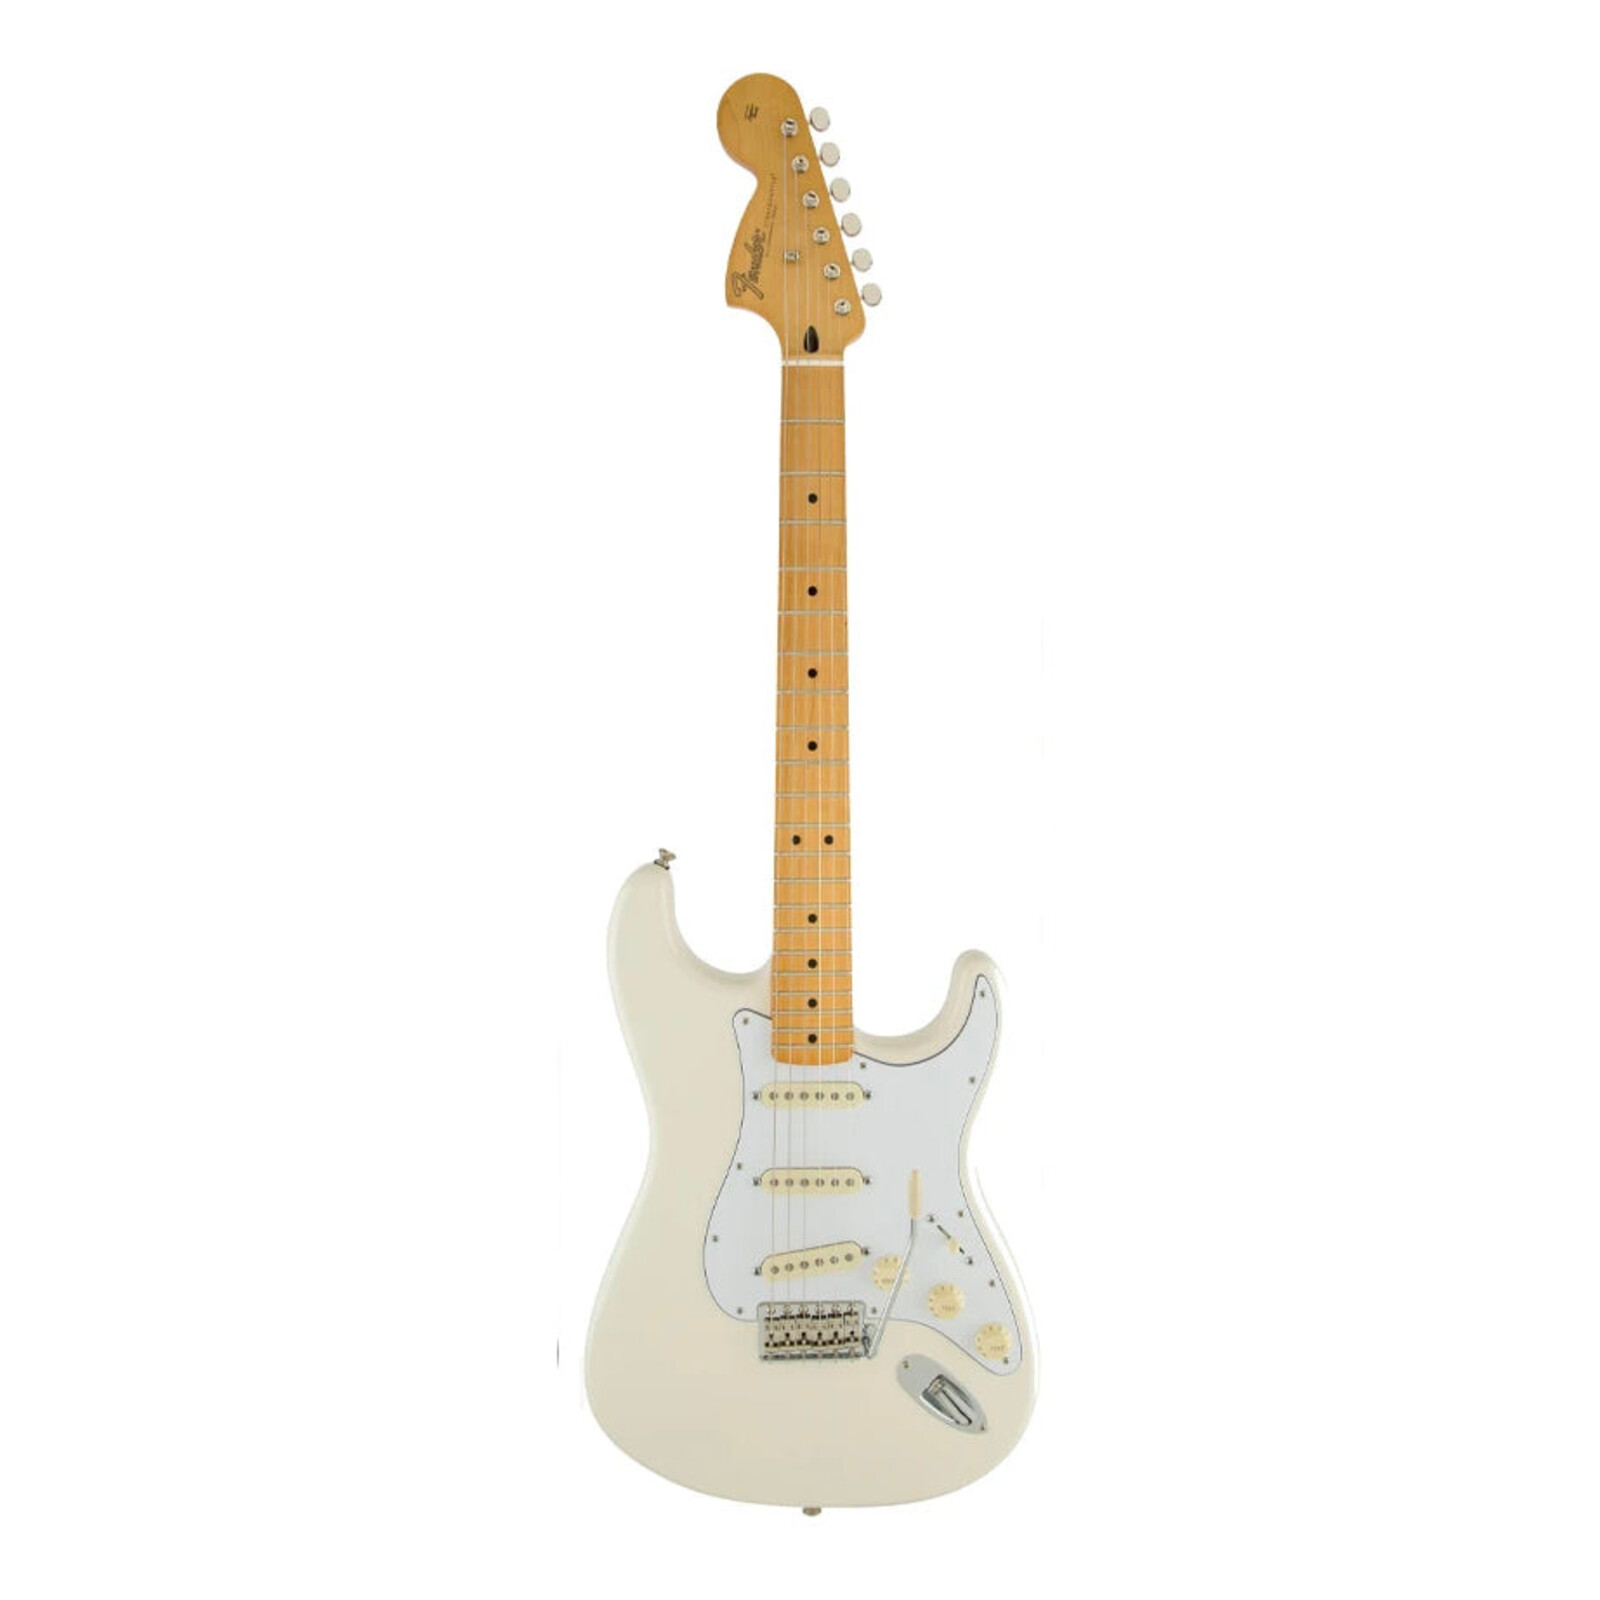 Fender Fender Jimi Hendrix Stratocaster